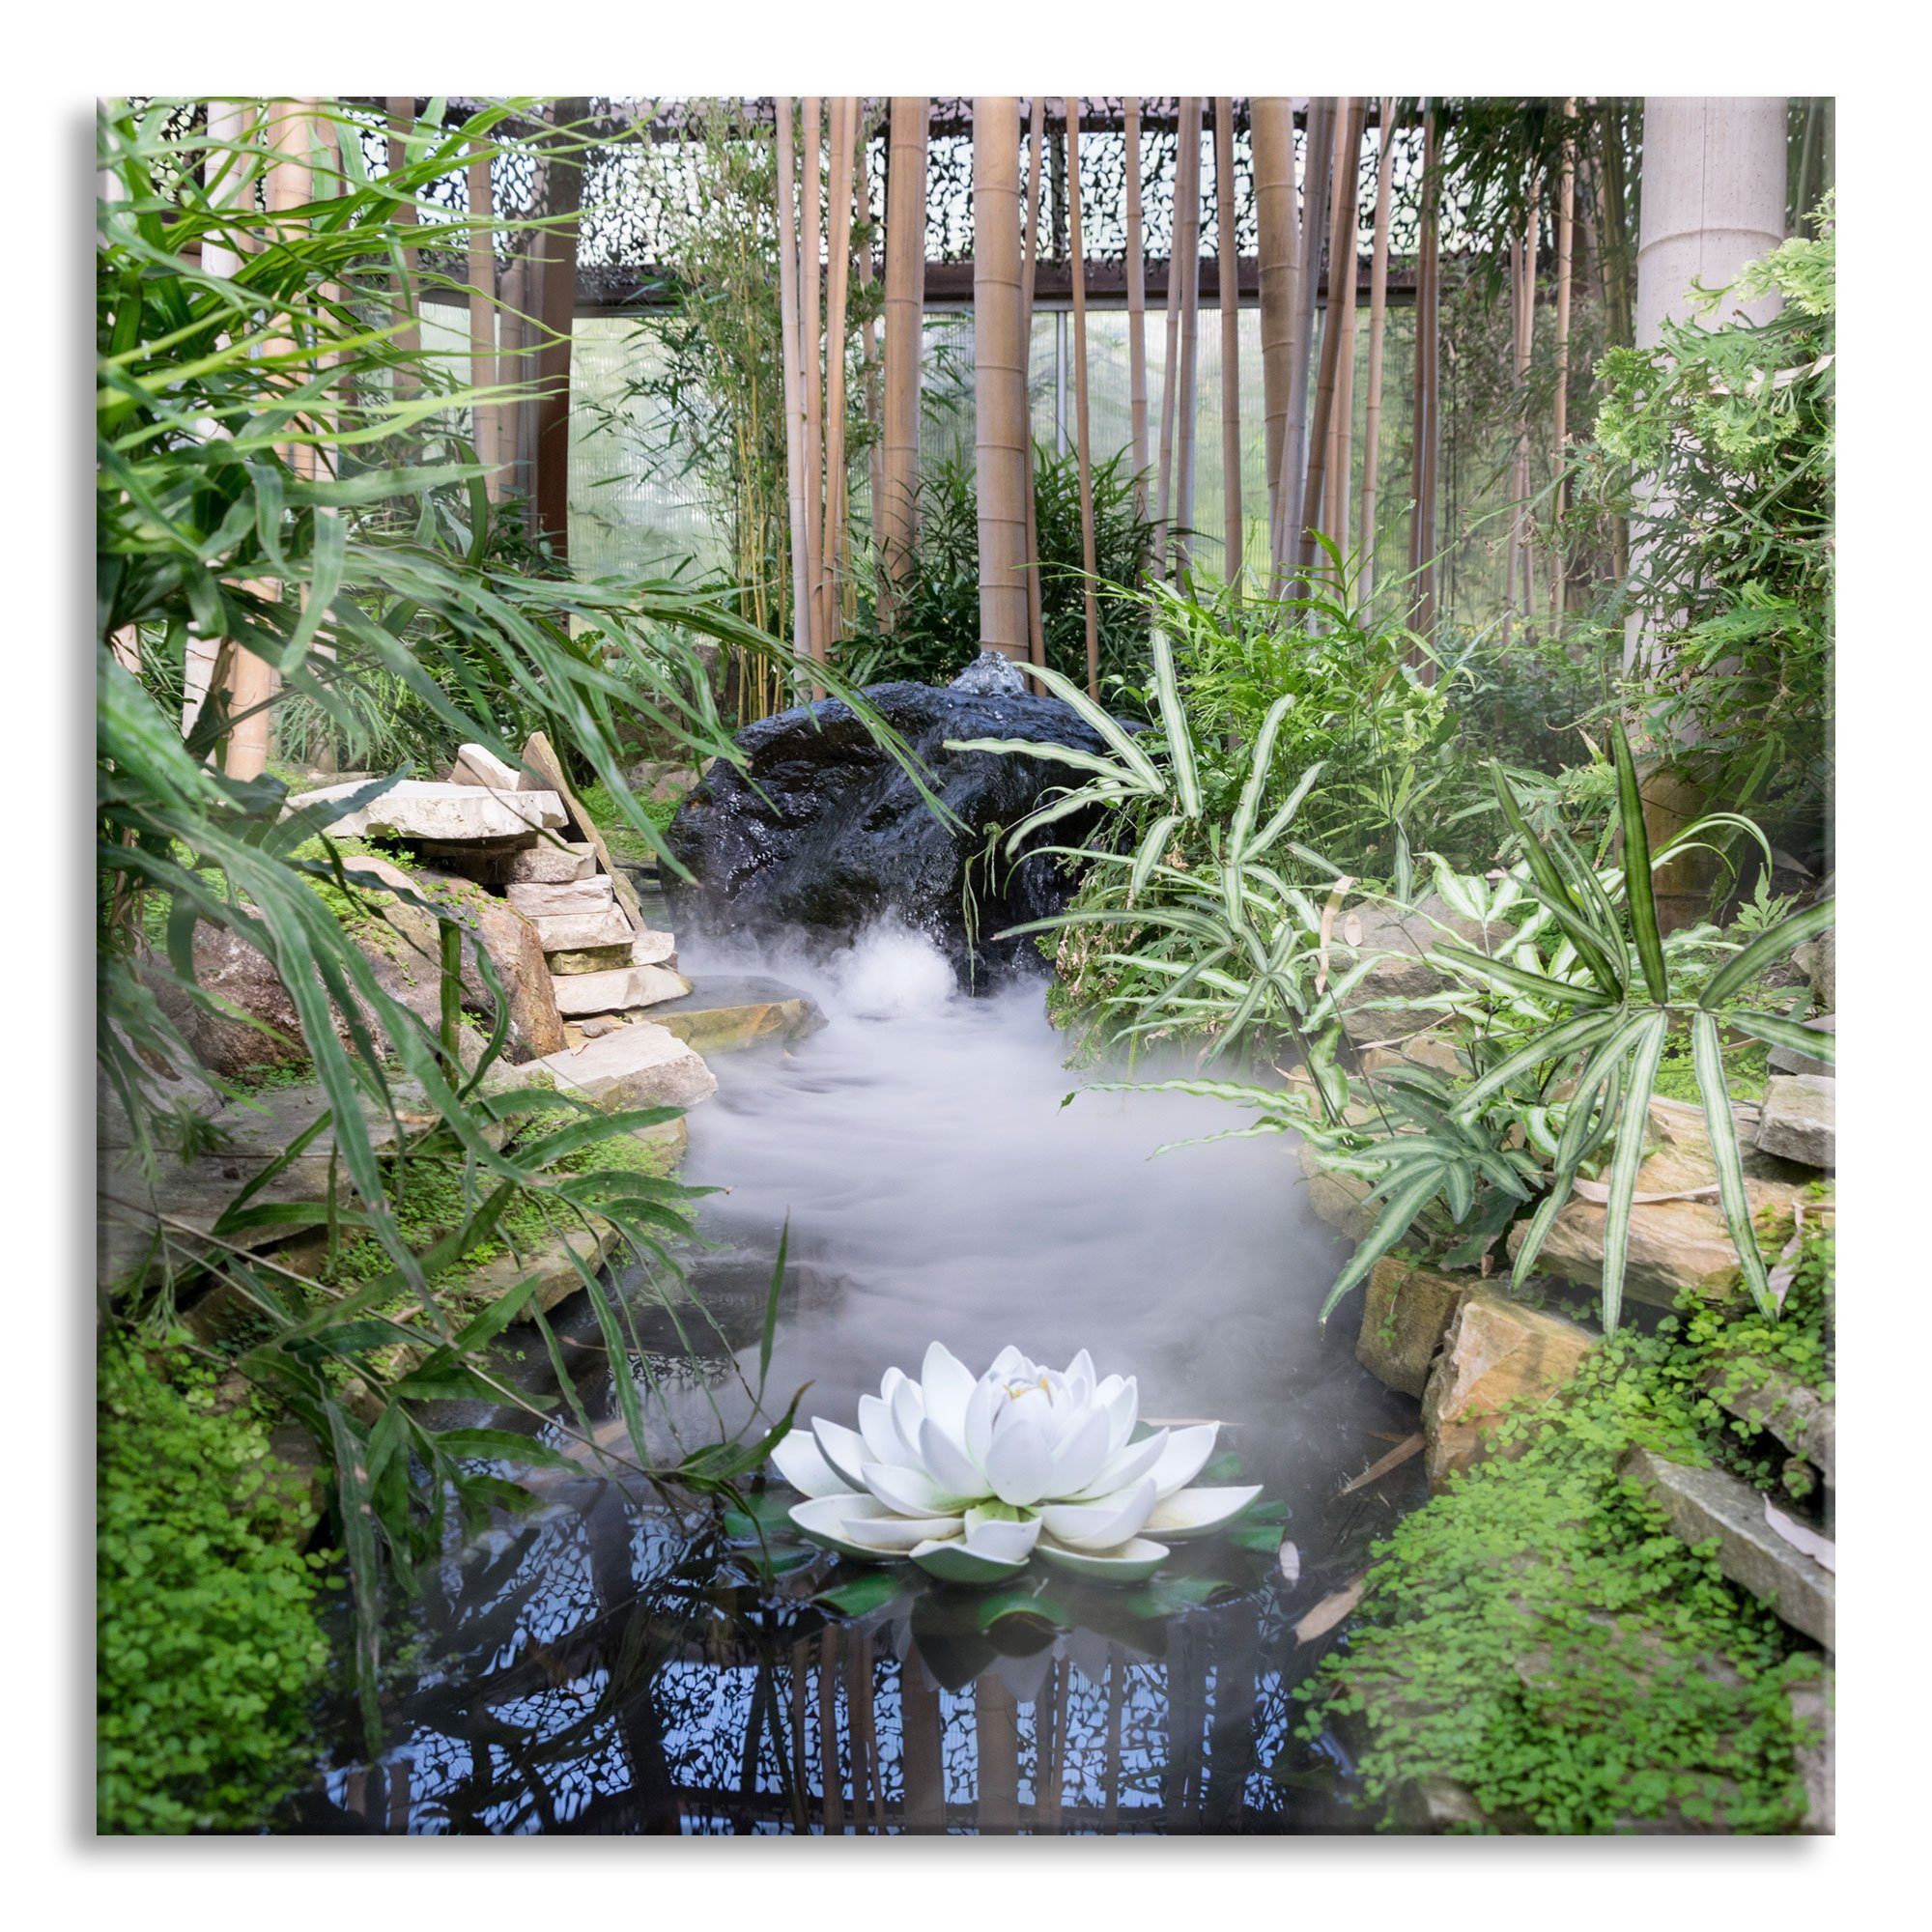 Pixxprint Glasbild Zen Garten Japan, Zen Garten Japan (1 St), Glasbild aus Echtglas, inkl. Aufhängungen und Abstandshalter